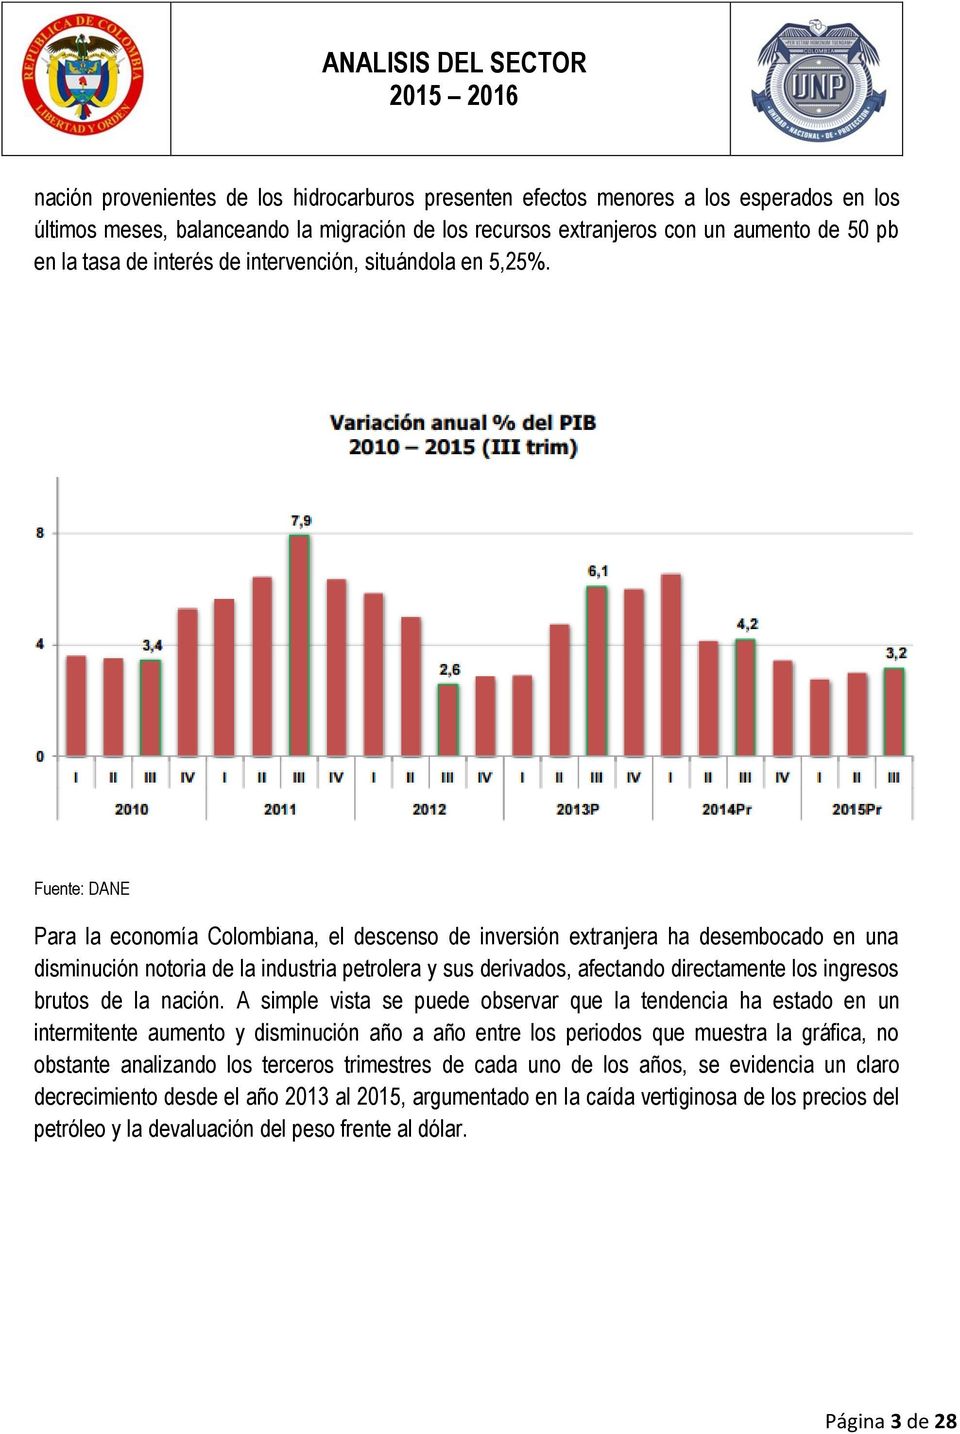 Fuente: DANE Para la economía Colombiana, el descenso de inversión extranjera ha desembocado en una disminución notoria de la industria petrolera y sus derivados, afectando directamente los ingresos